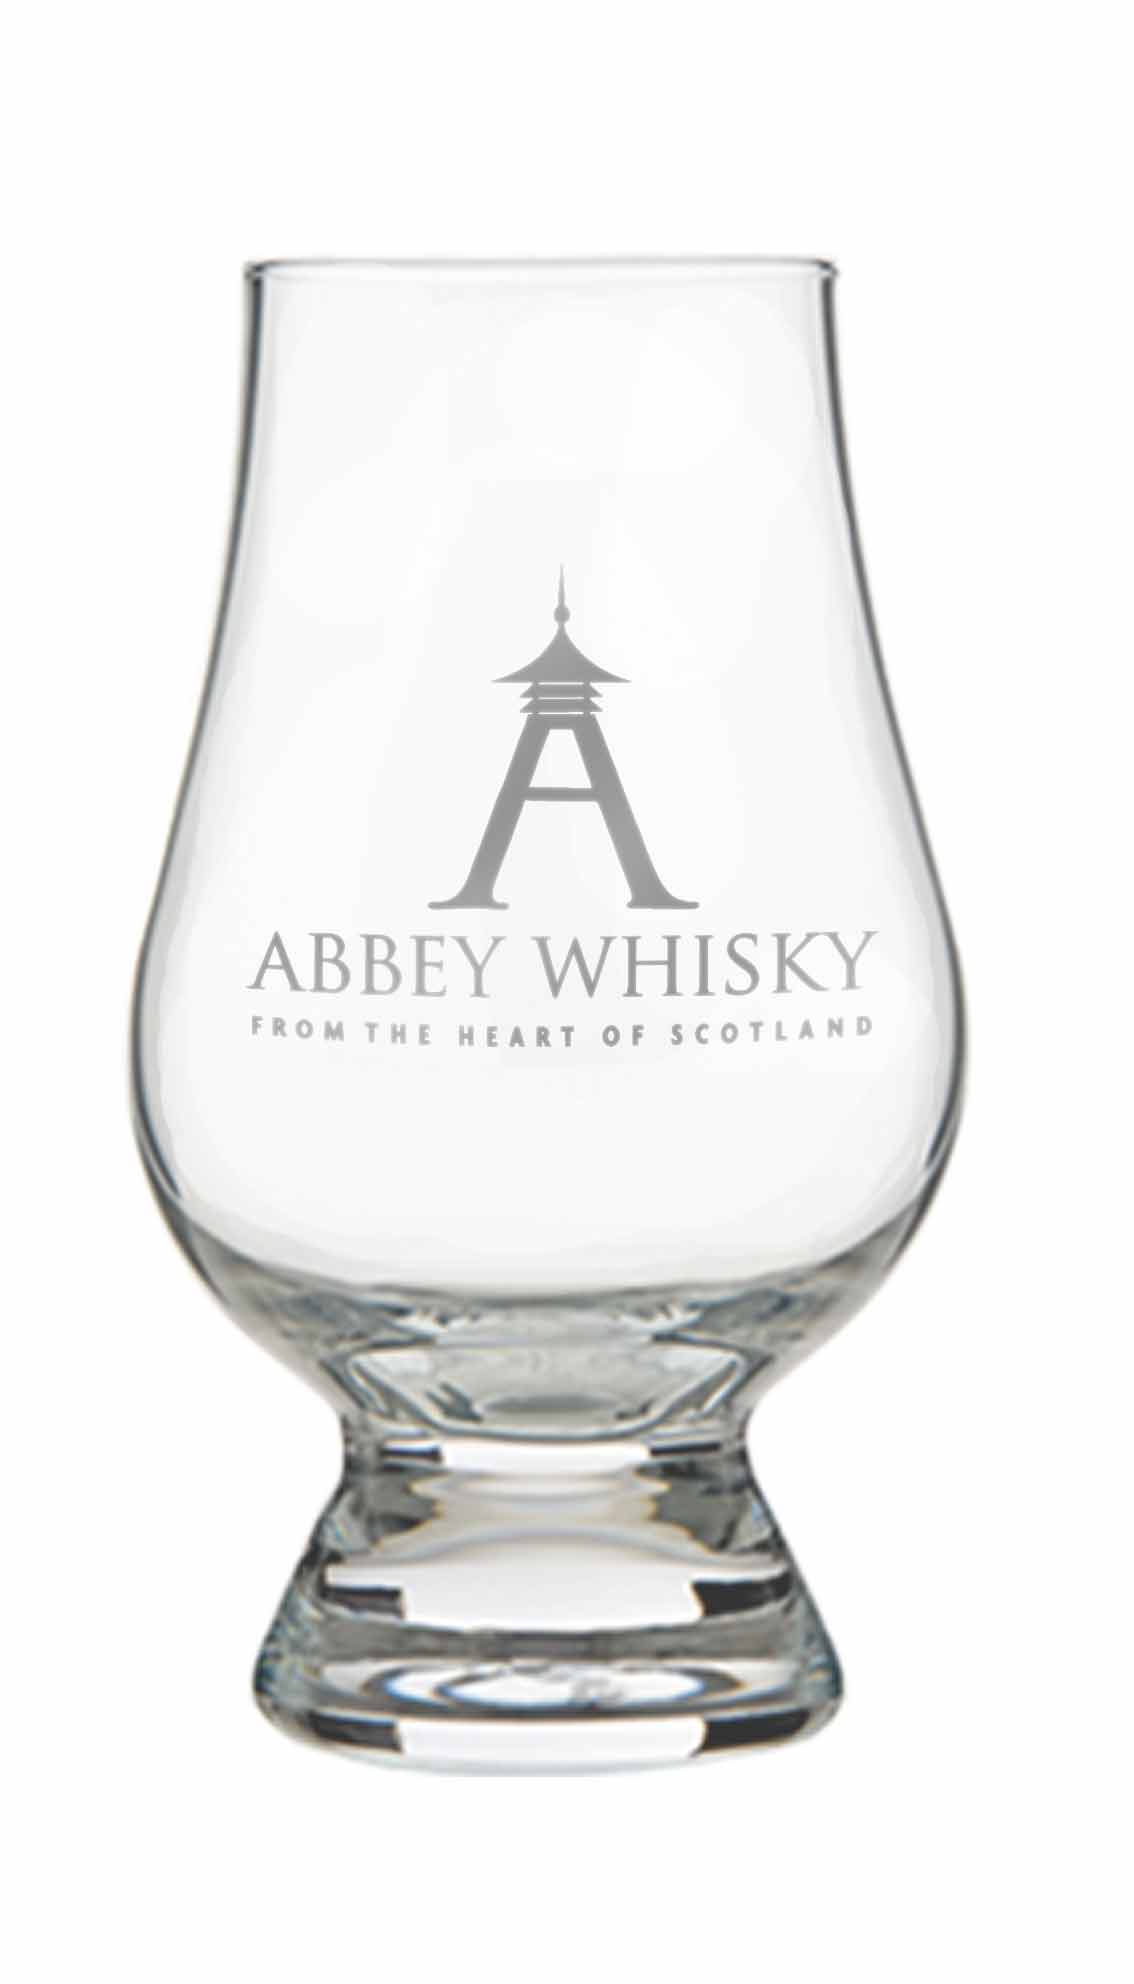 The Abbey Whisky Tasting Glass / Glencairn